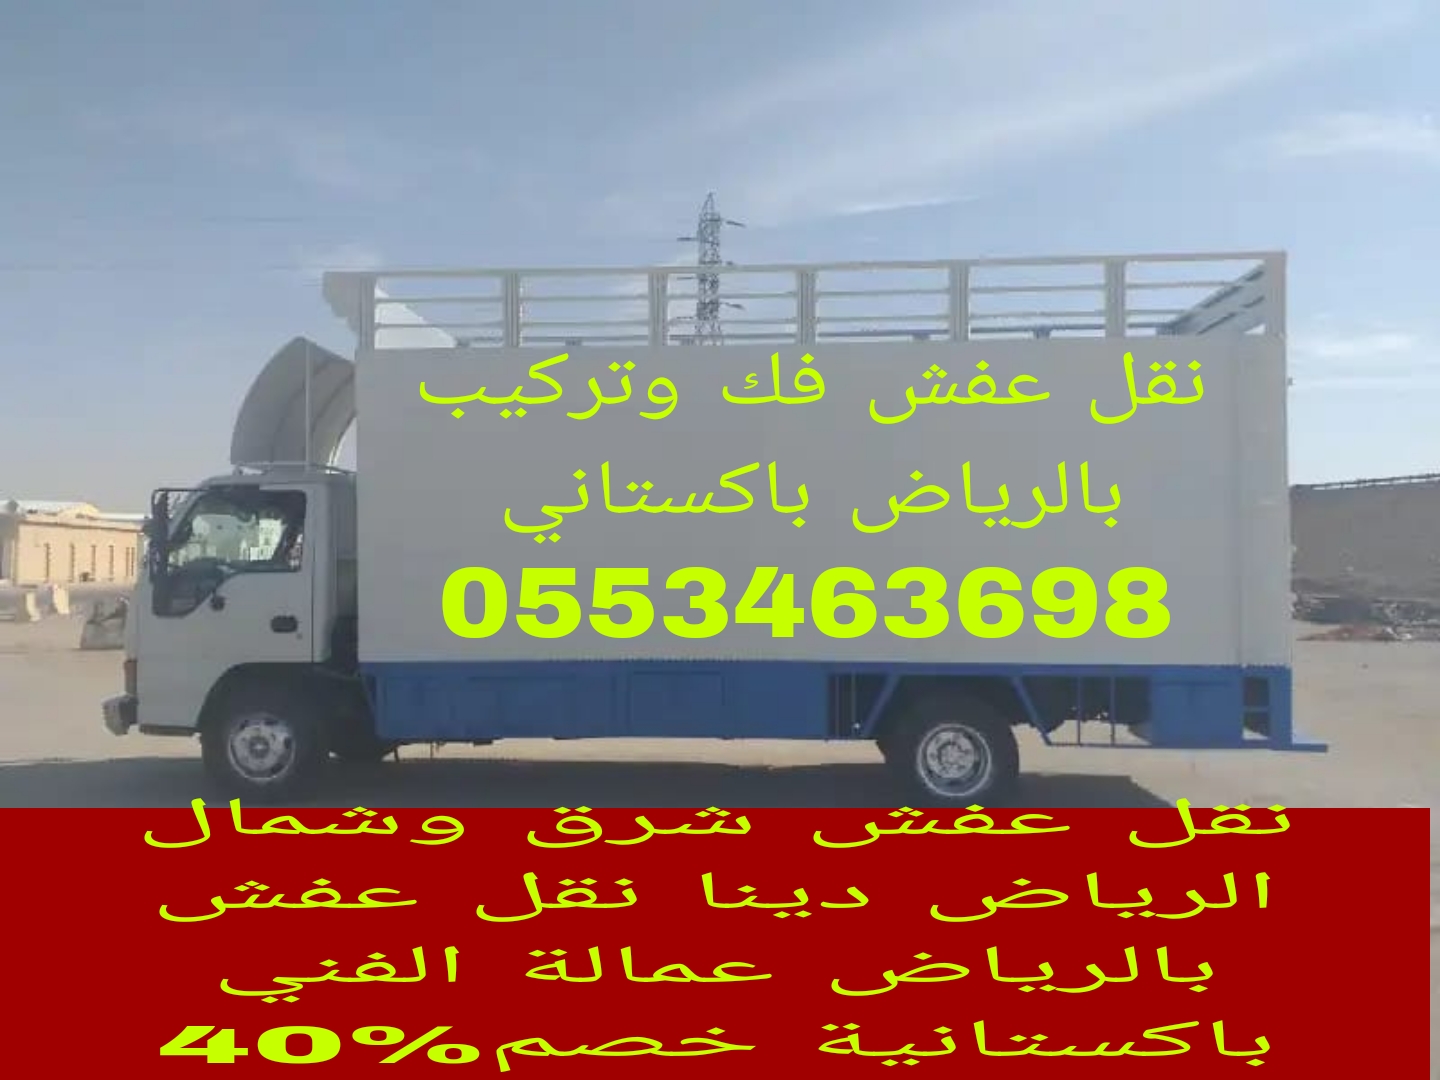 نقل عفش شرق الرياض وشمال بالرياض 0553463698